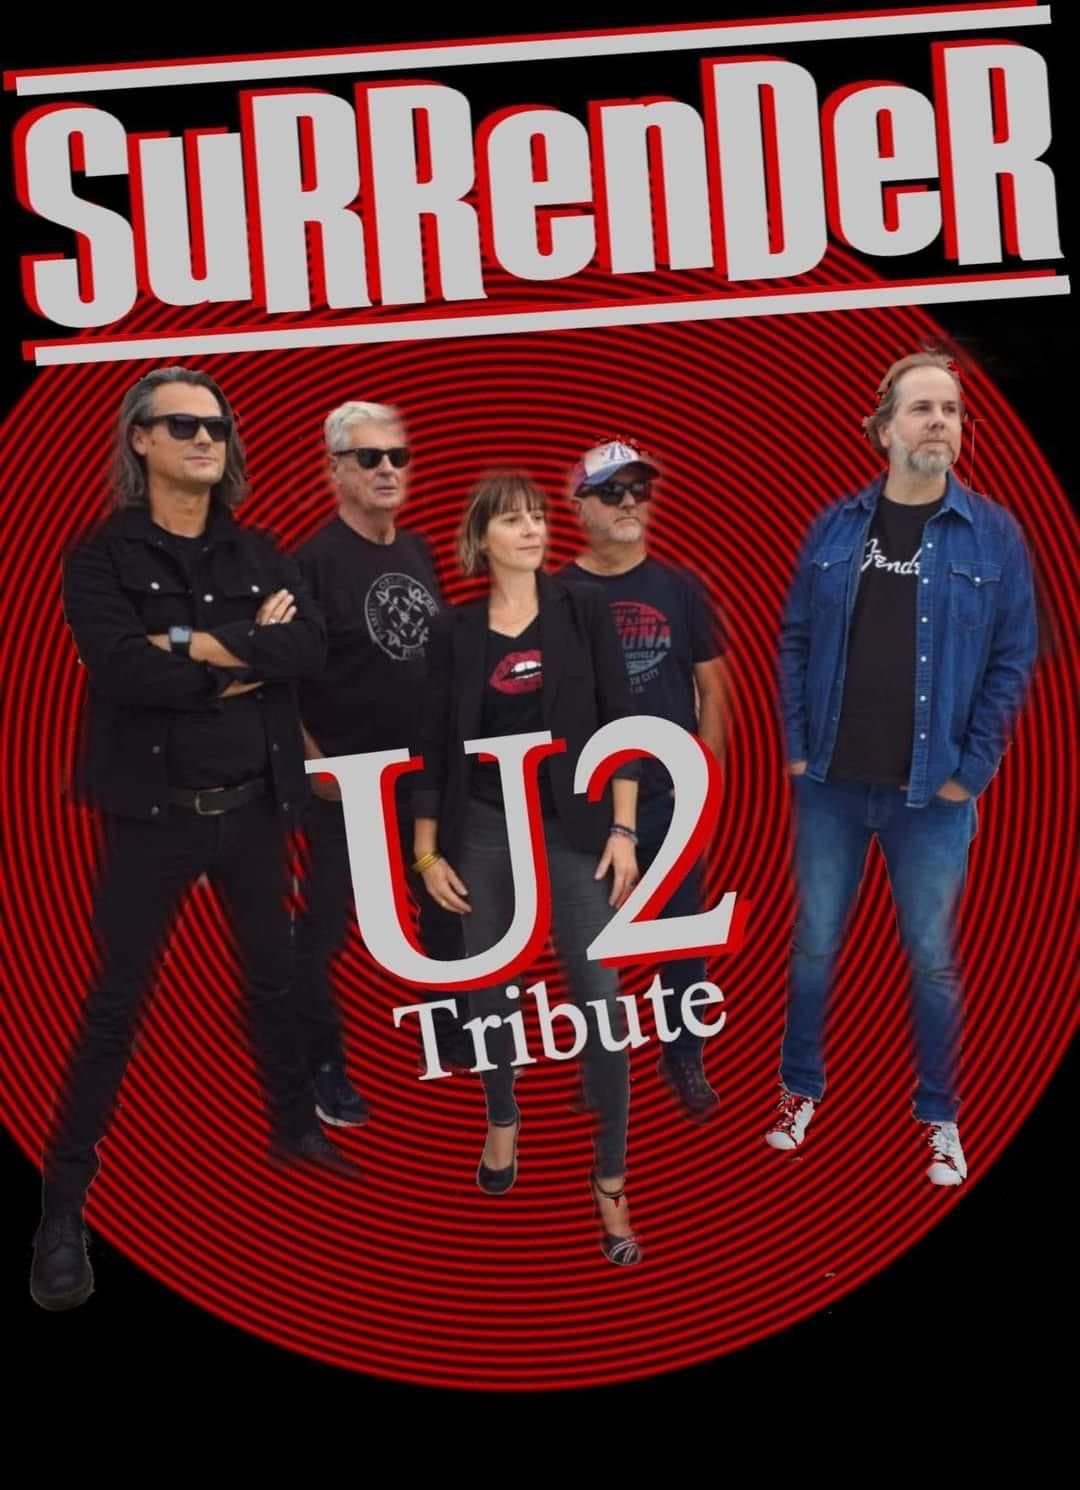 Tribute U2 by Surrender